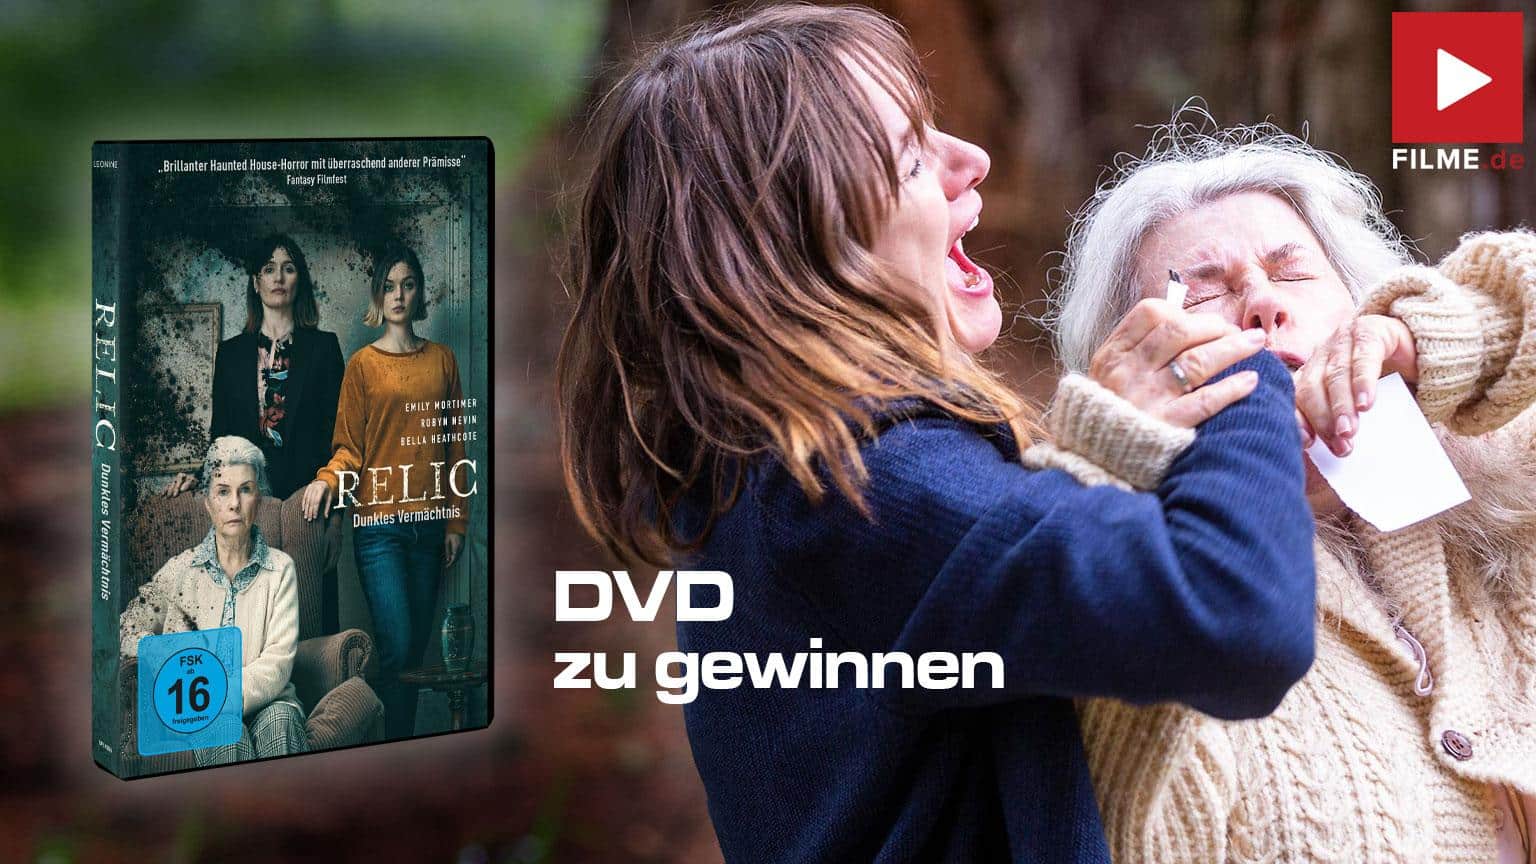 Relic Blu-ray Film 2020 Gewinnspiel gewinnen DVD Blu-ray shop kaufen Artikelbild